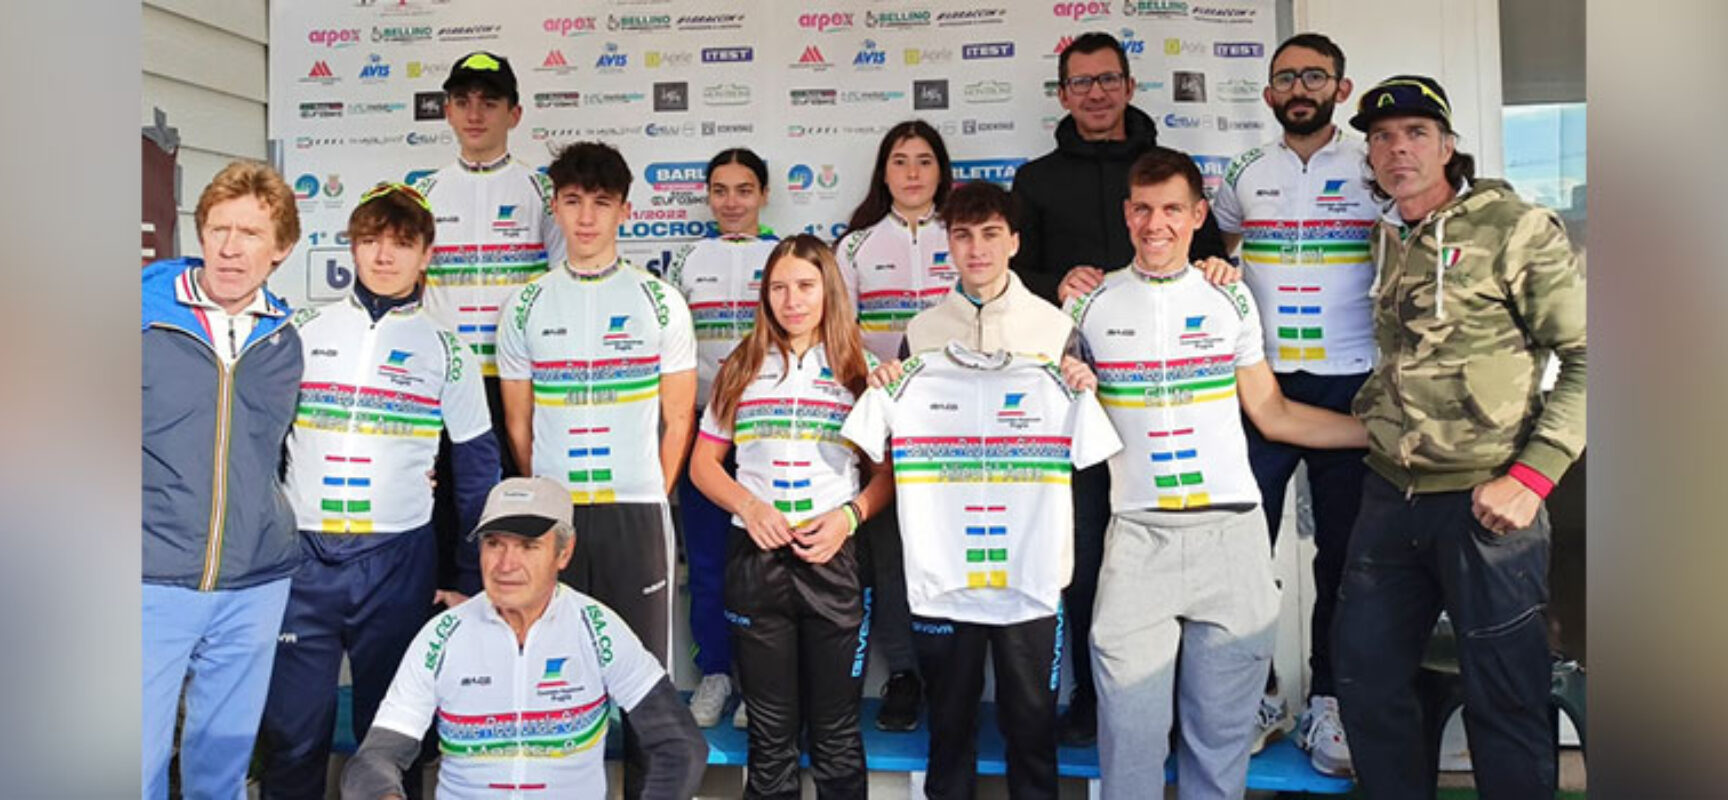 Polisportiva Cavallaro, titoli regionali conquistati al Campionato di Ciclocross / FOTO